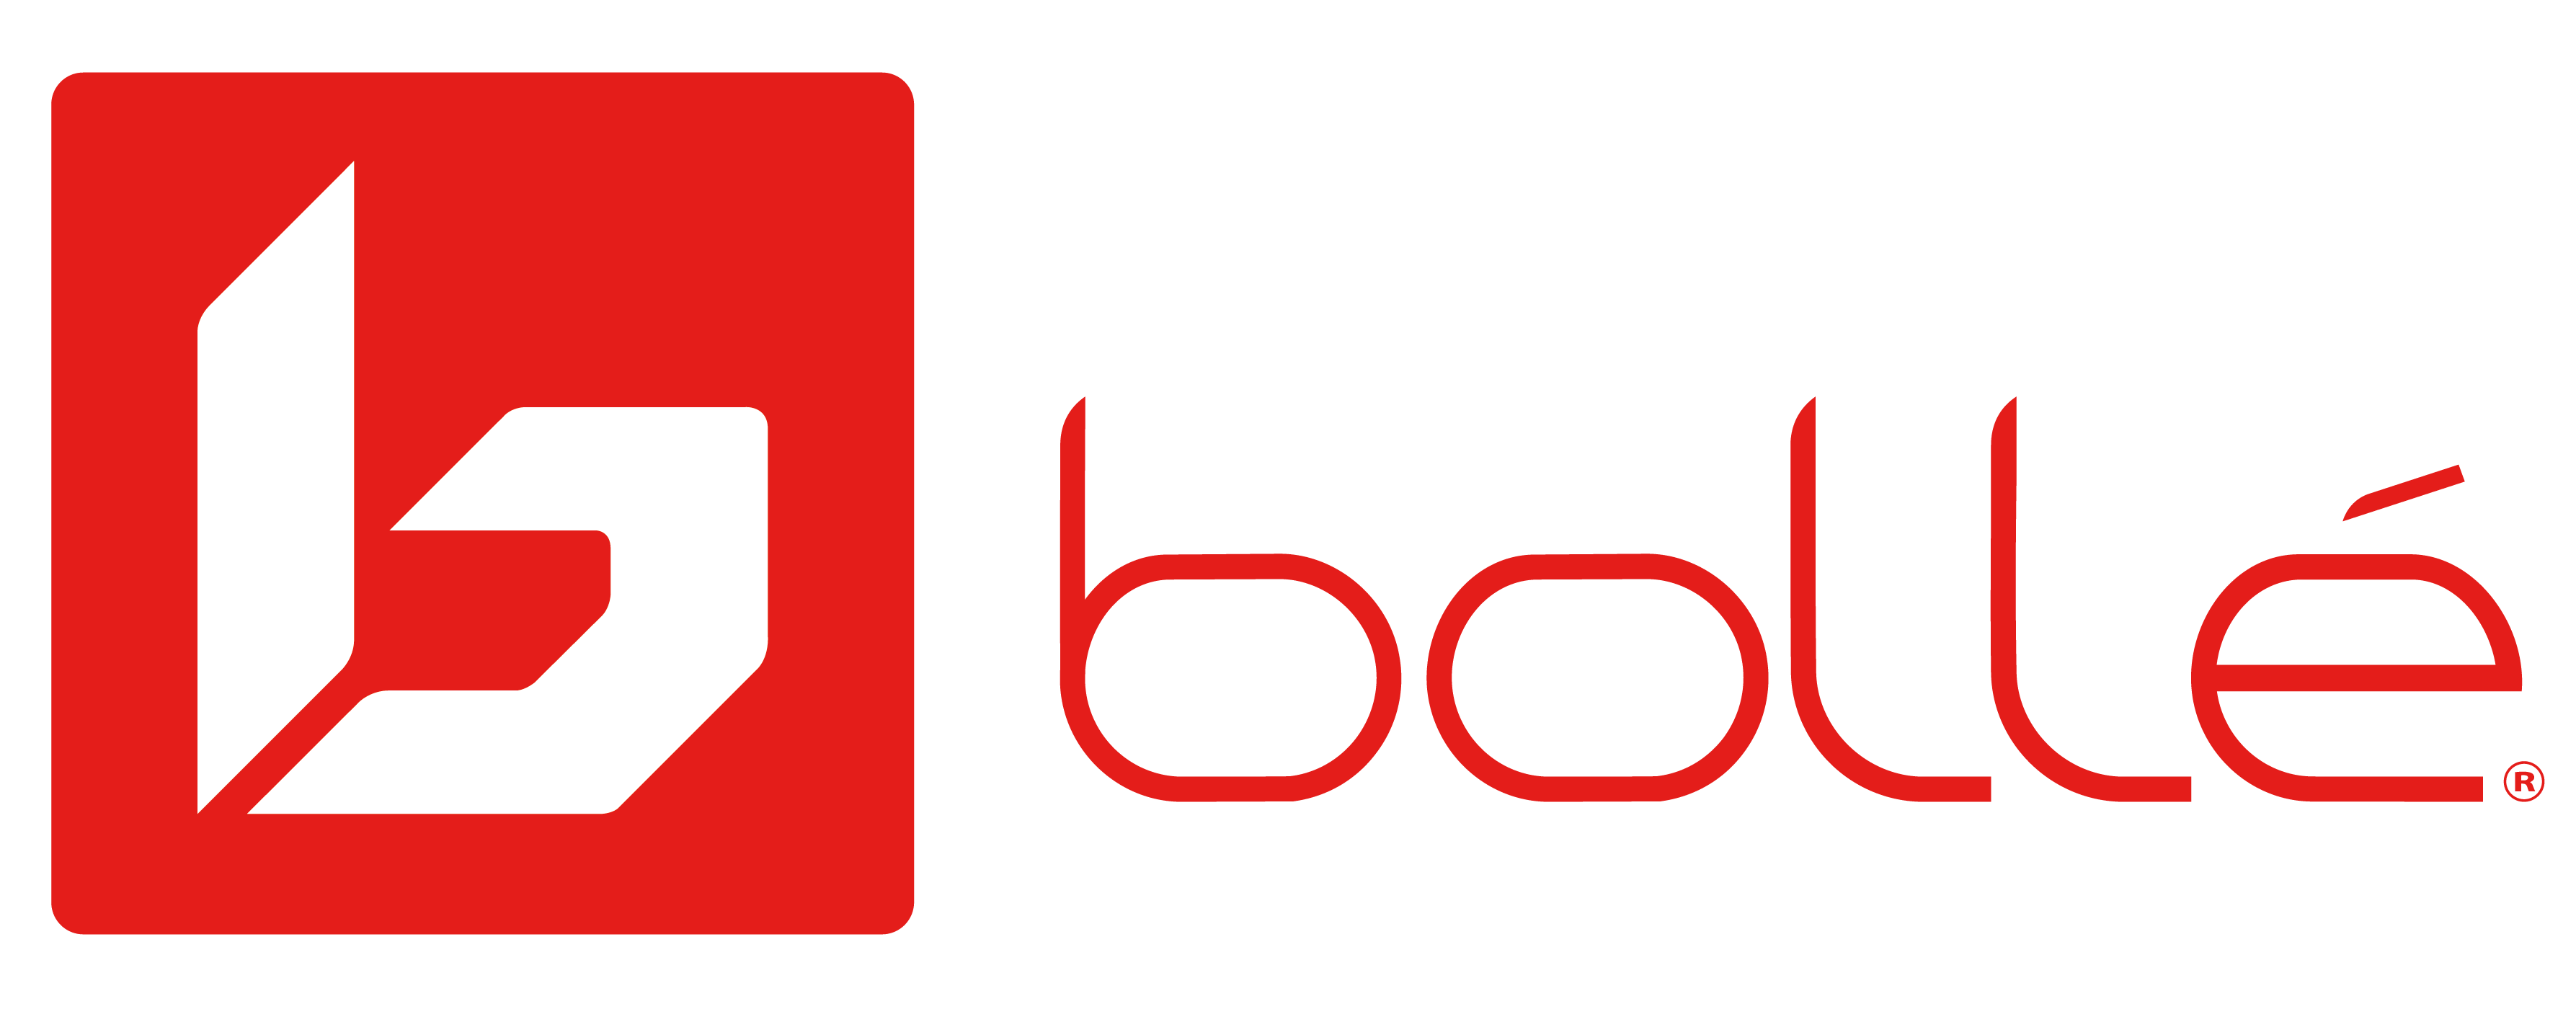 Bollé Brands